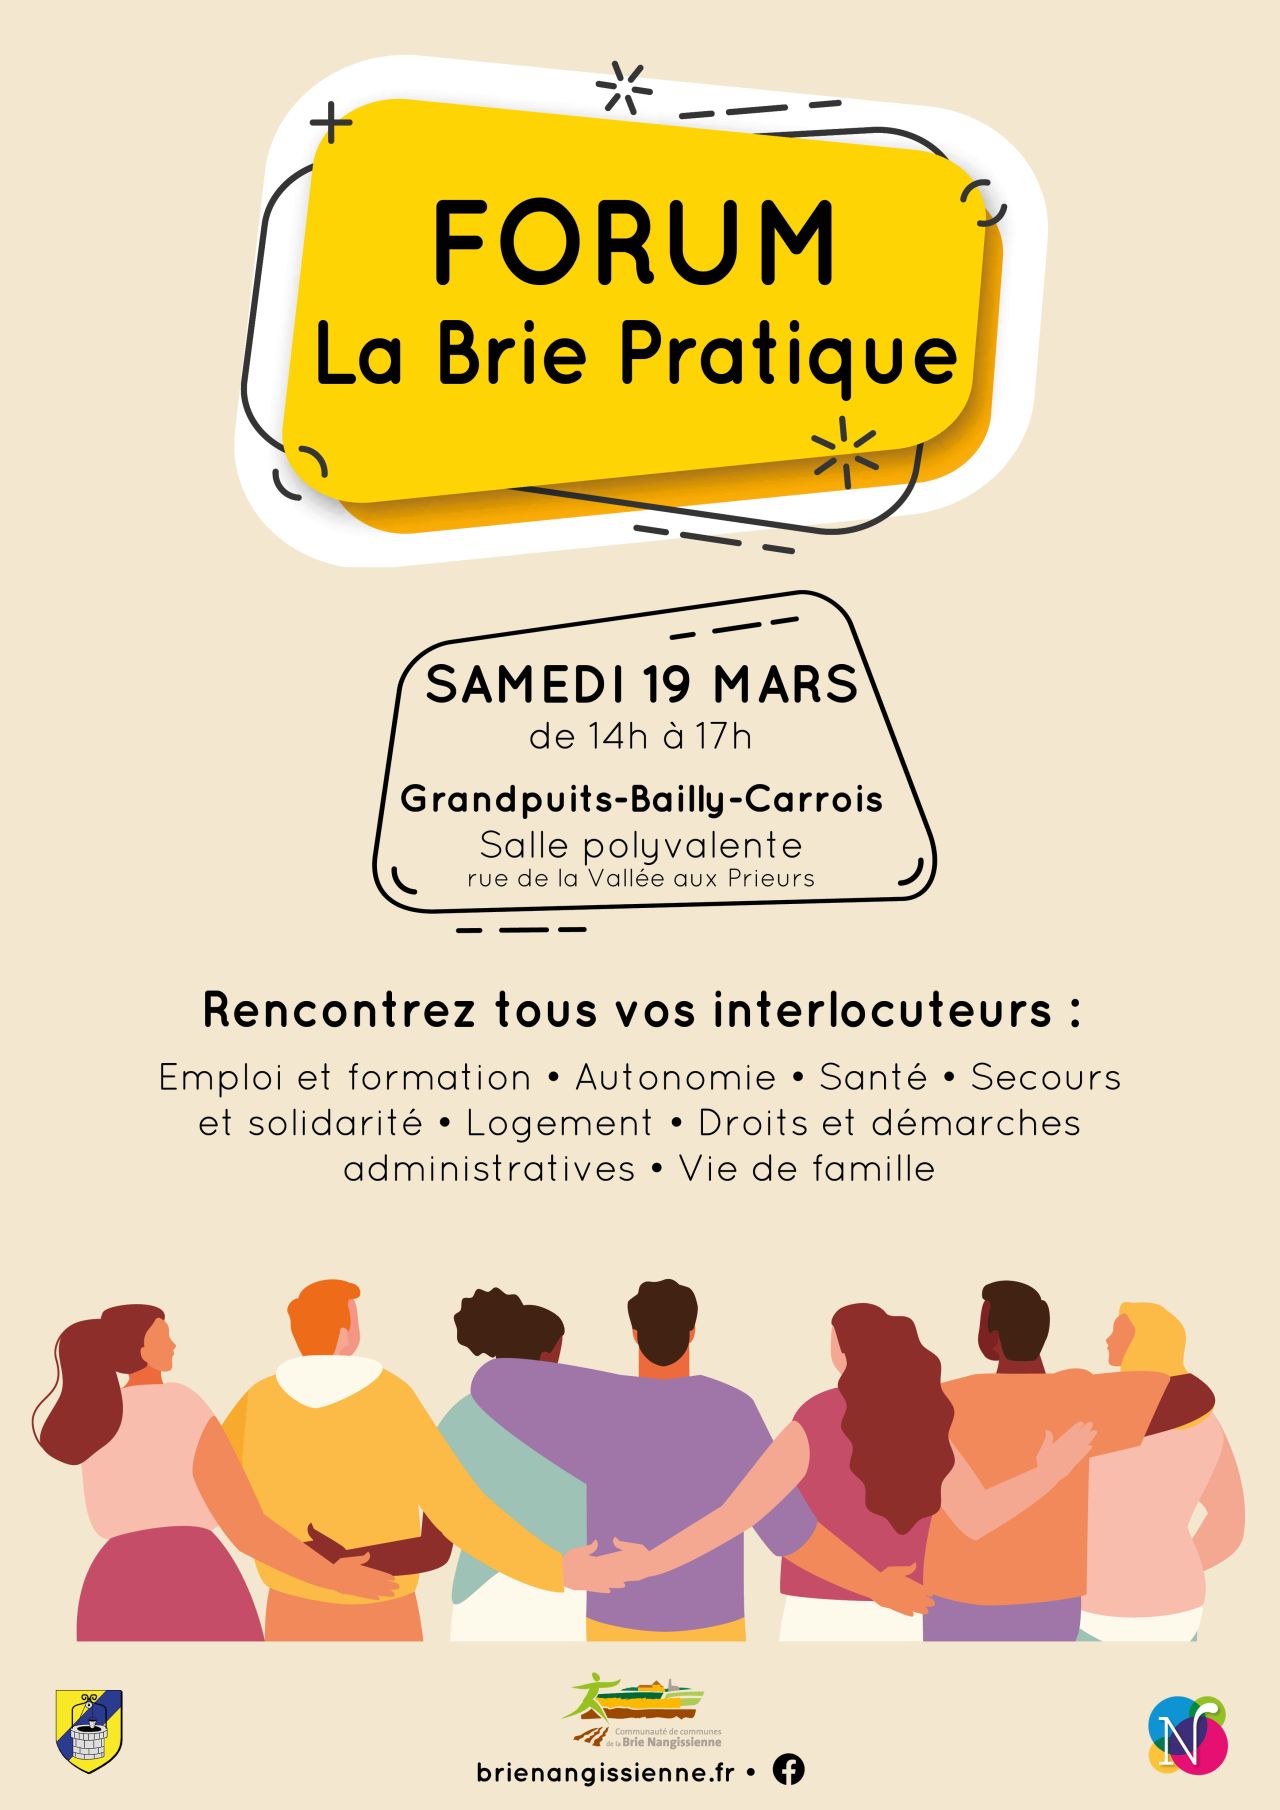 Forum La Brie Pratique - Affiche